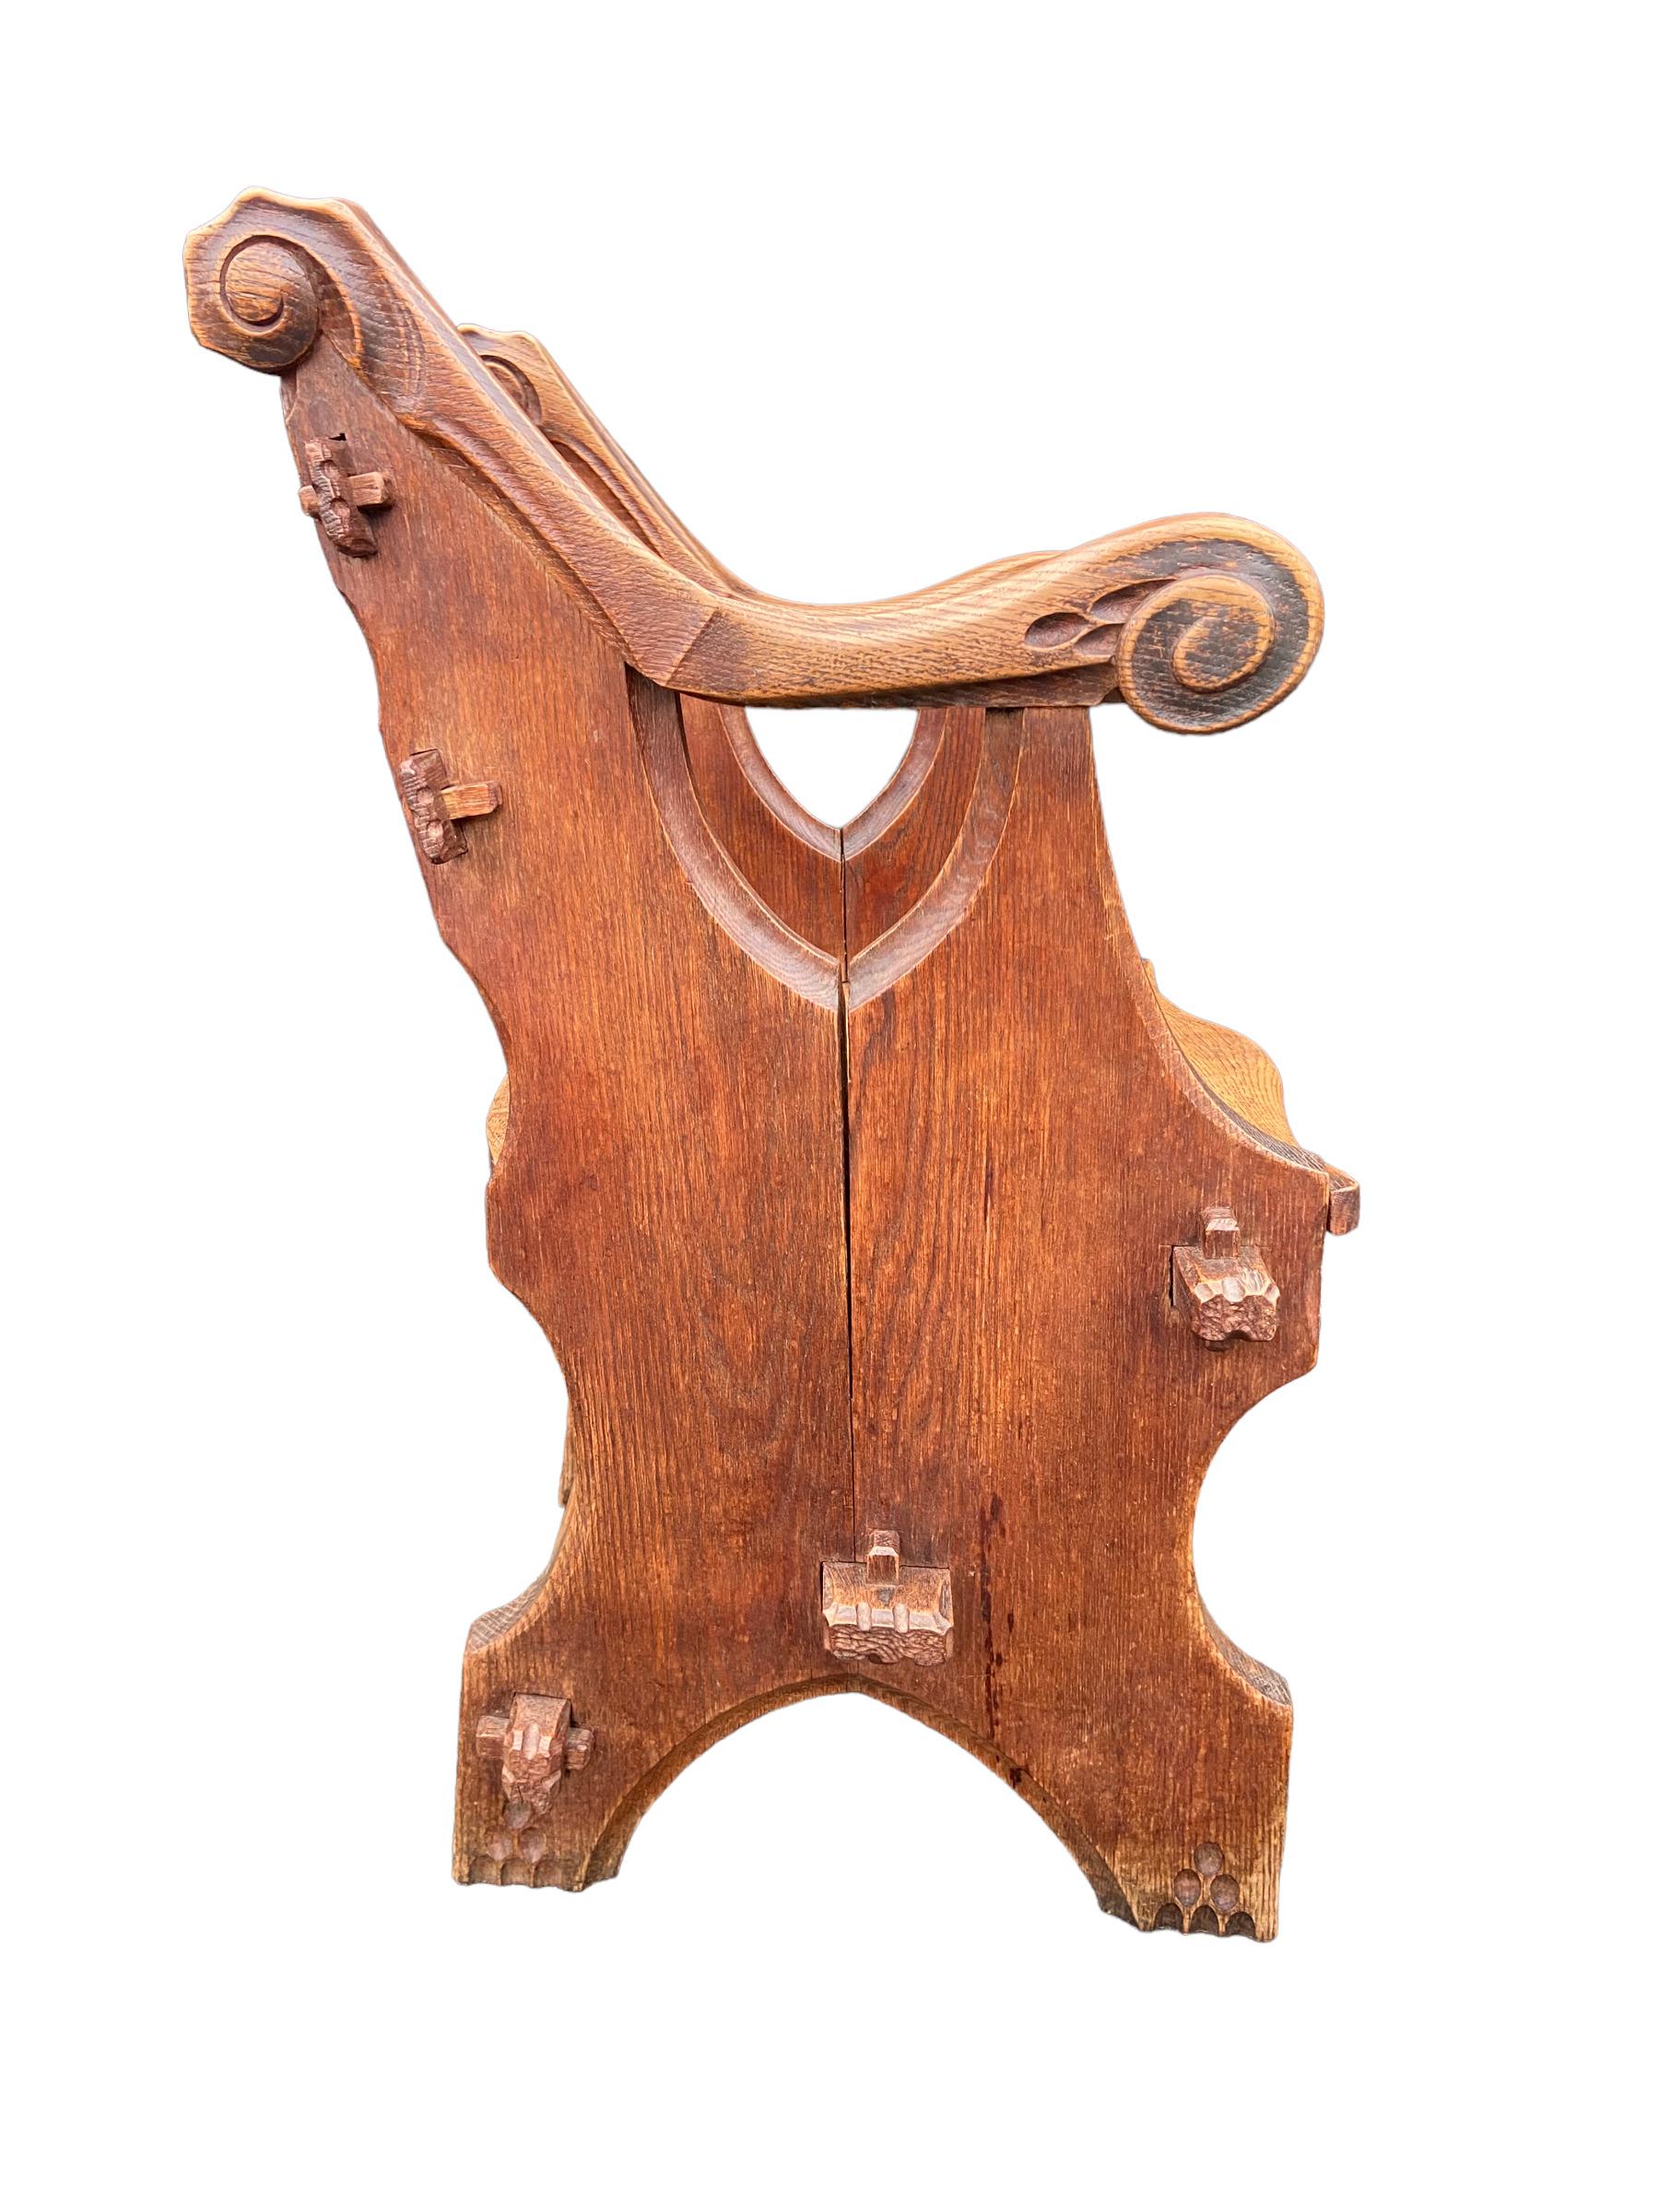 Skulpturaler Stuhl aus Eichenholz, hergestellt in den Niederlanden um 1930. Dieses schwere Stück holländischen Designs ist in einem guten Zustand, weist aber Altersspuren auf.

Maße: Sitzhöhe 45 cm, Höhe 90 cm, Breite 66 cm, Tiefe 50 cm.